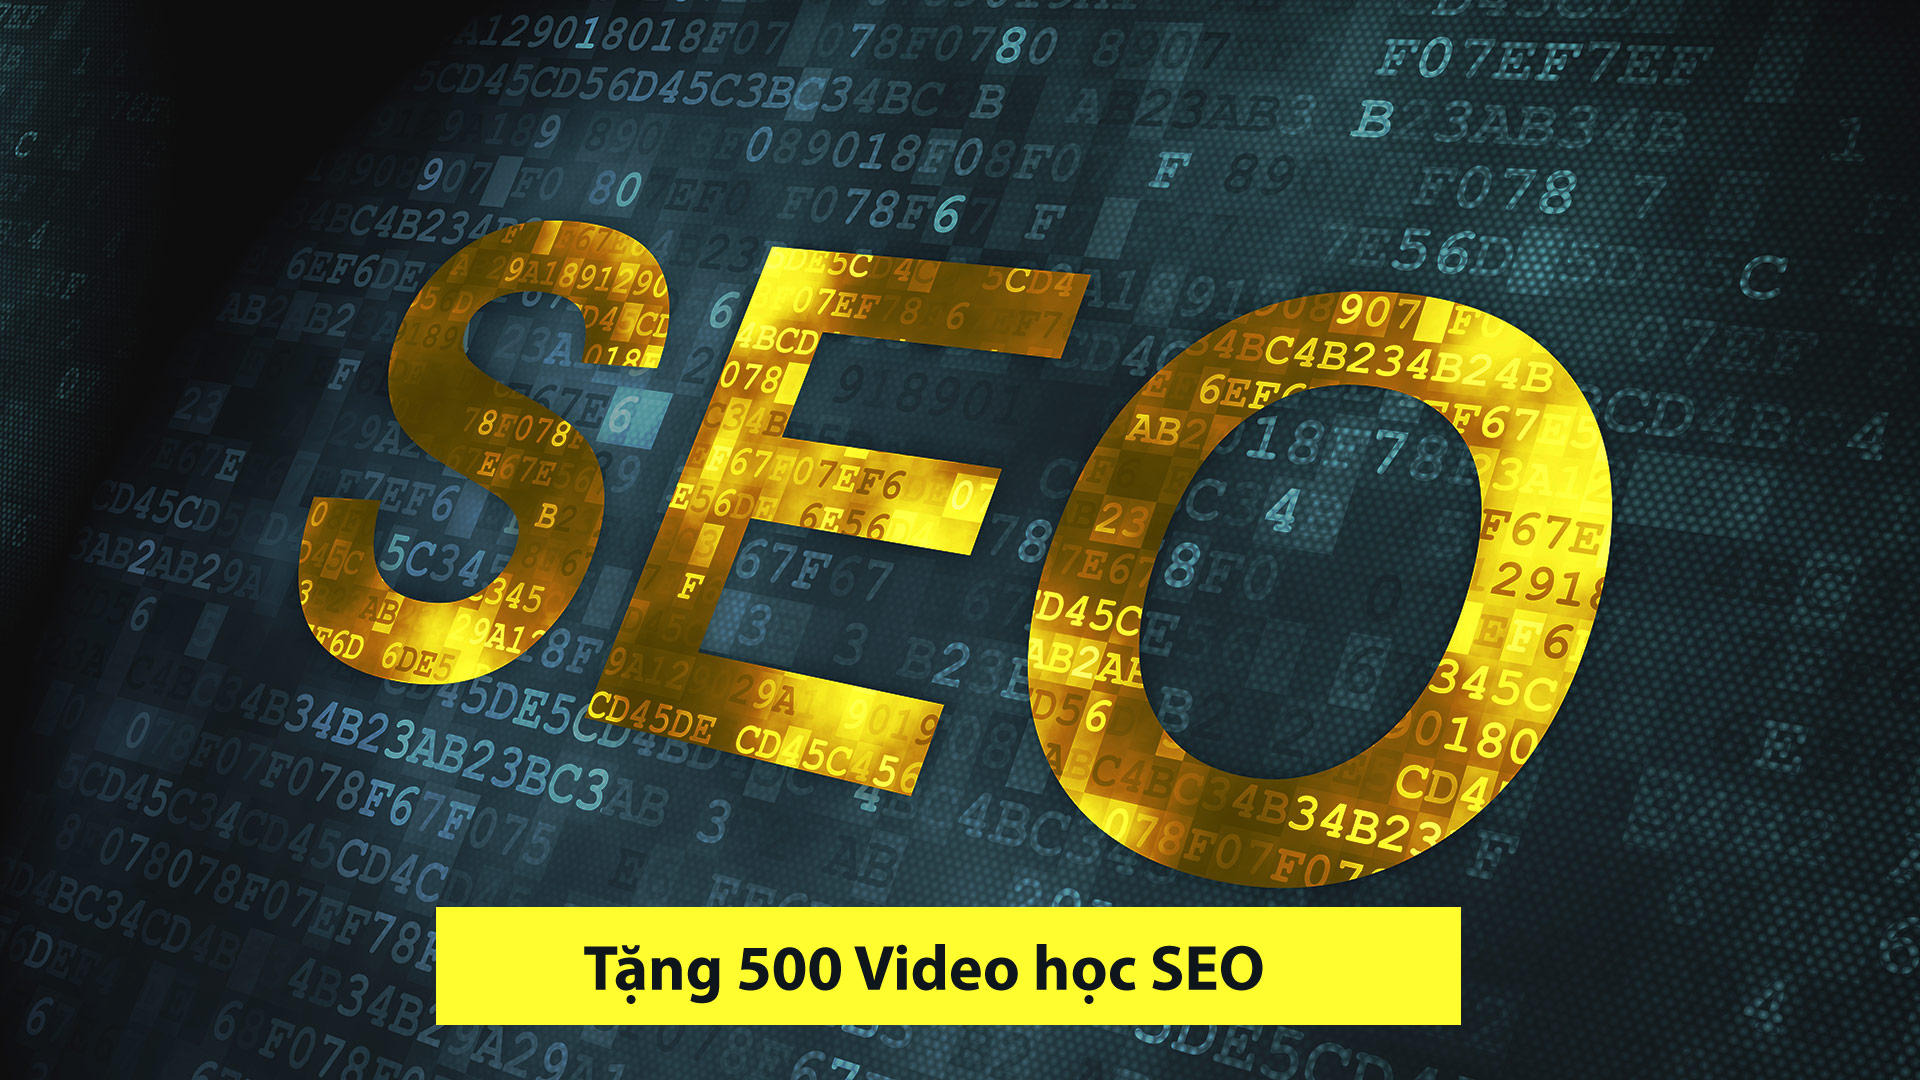 Tặng 500 video hướng dẫn SEO từ cơ bản đến nâng cao > tang-500-video-huong-dan-seo-tu-co-ban-den-nang-cao